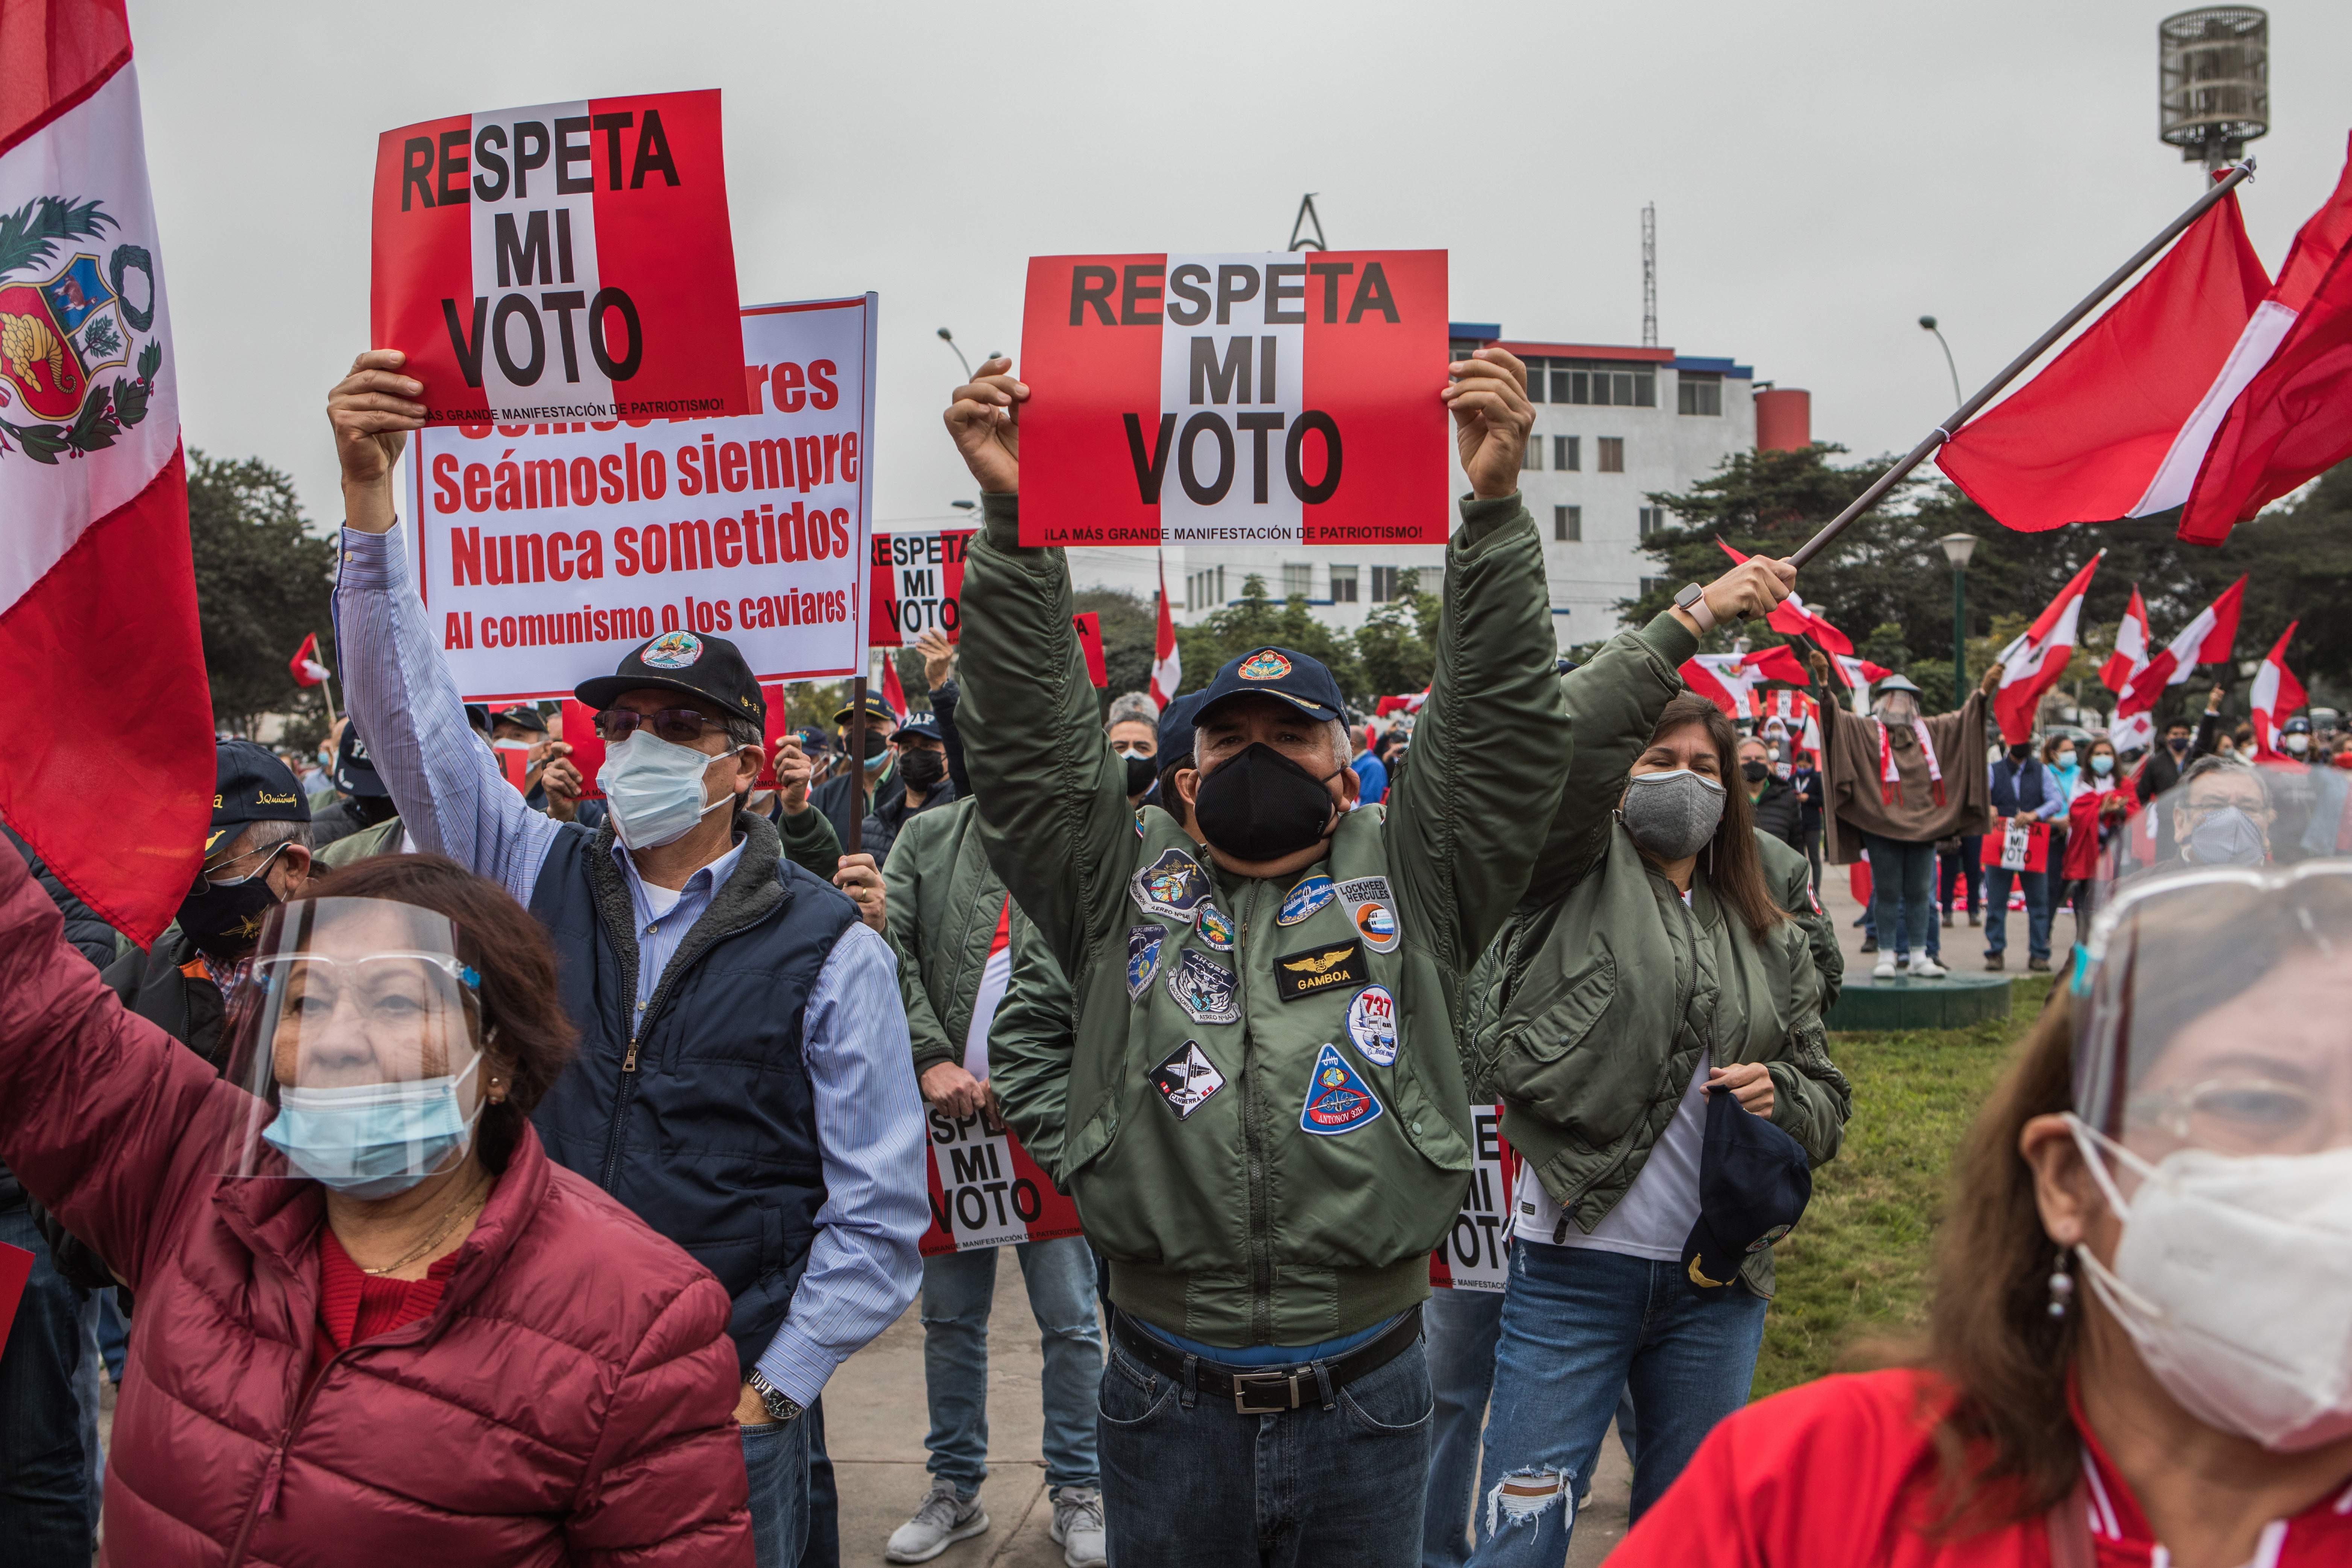 Partidarios de Keiko Fujimori, candidata presidencial peruana de derecha, protestan en Lima, capital de Perú, el 30 de junio de 2021. (Foto Prensa Libre: Marco Garro/The New York Times)